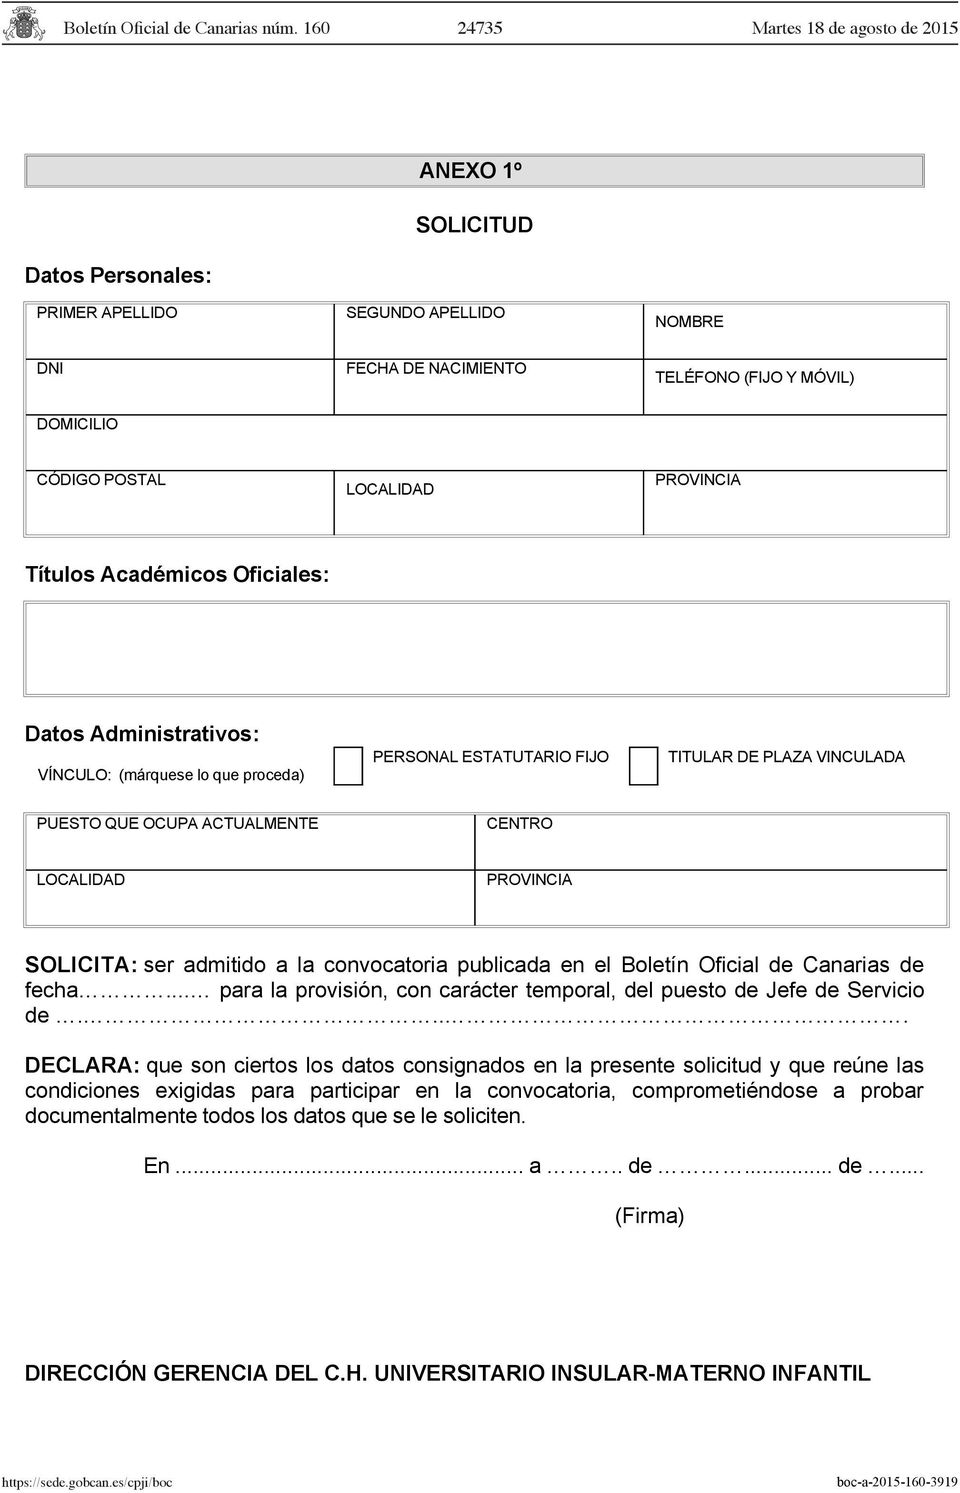 admitido a la convocatoria publicada en el Boletín Oficial de Canarias de fecha... para la provisión, con carácter temporal, del puesto de Jefe de Servicio de.